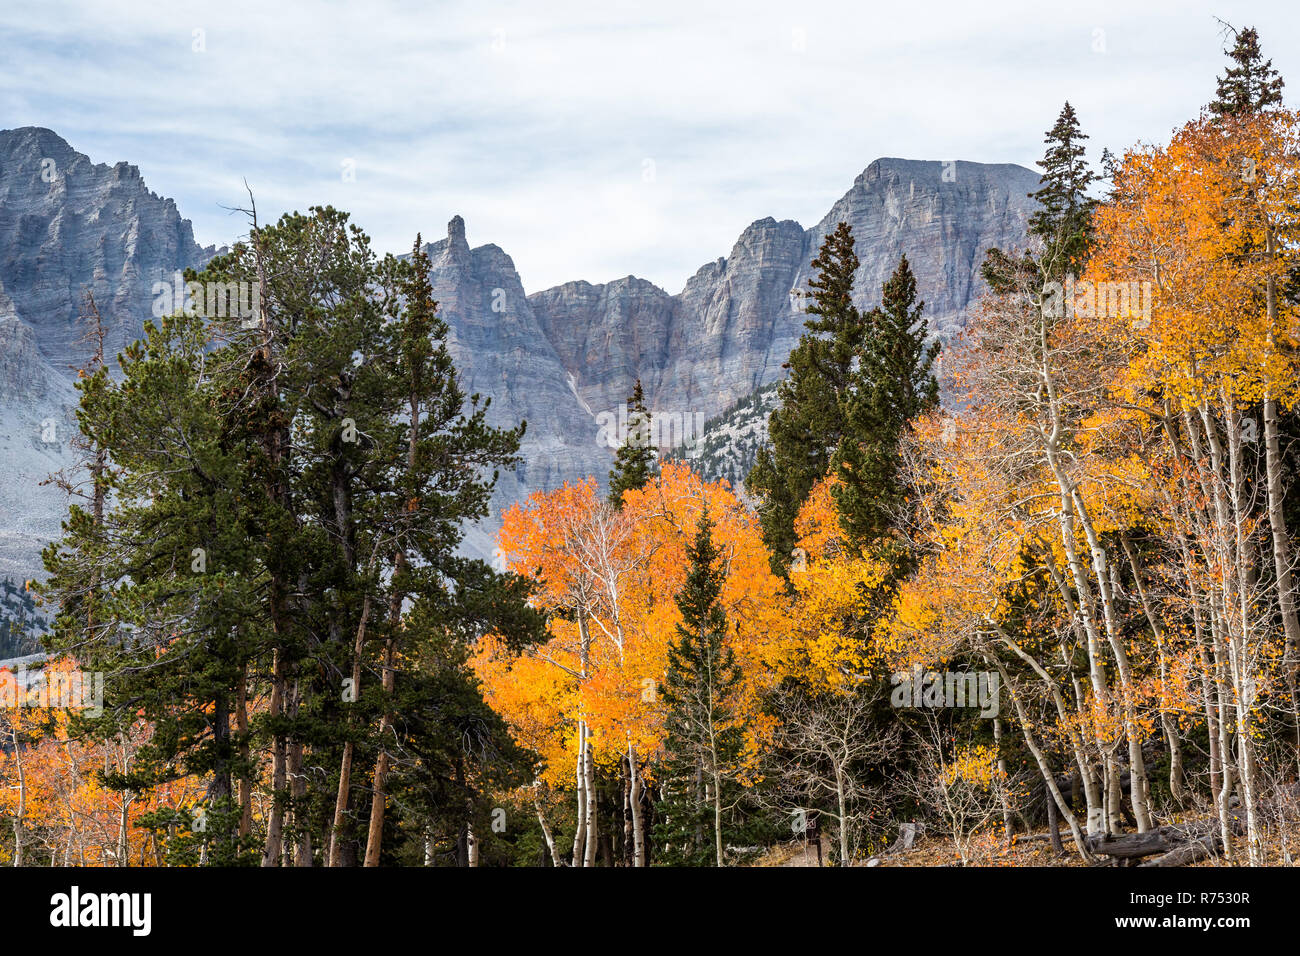 Die 13-tausend-Fuß-Wheeler Peak ist über wechselnde orange und gelbe Blätter im Herbst sichtbar. Stockfoto